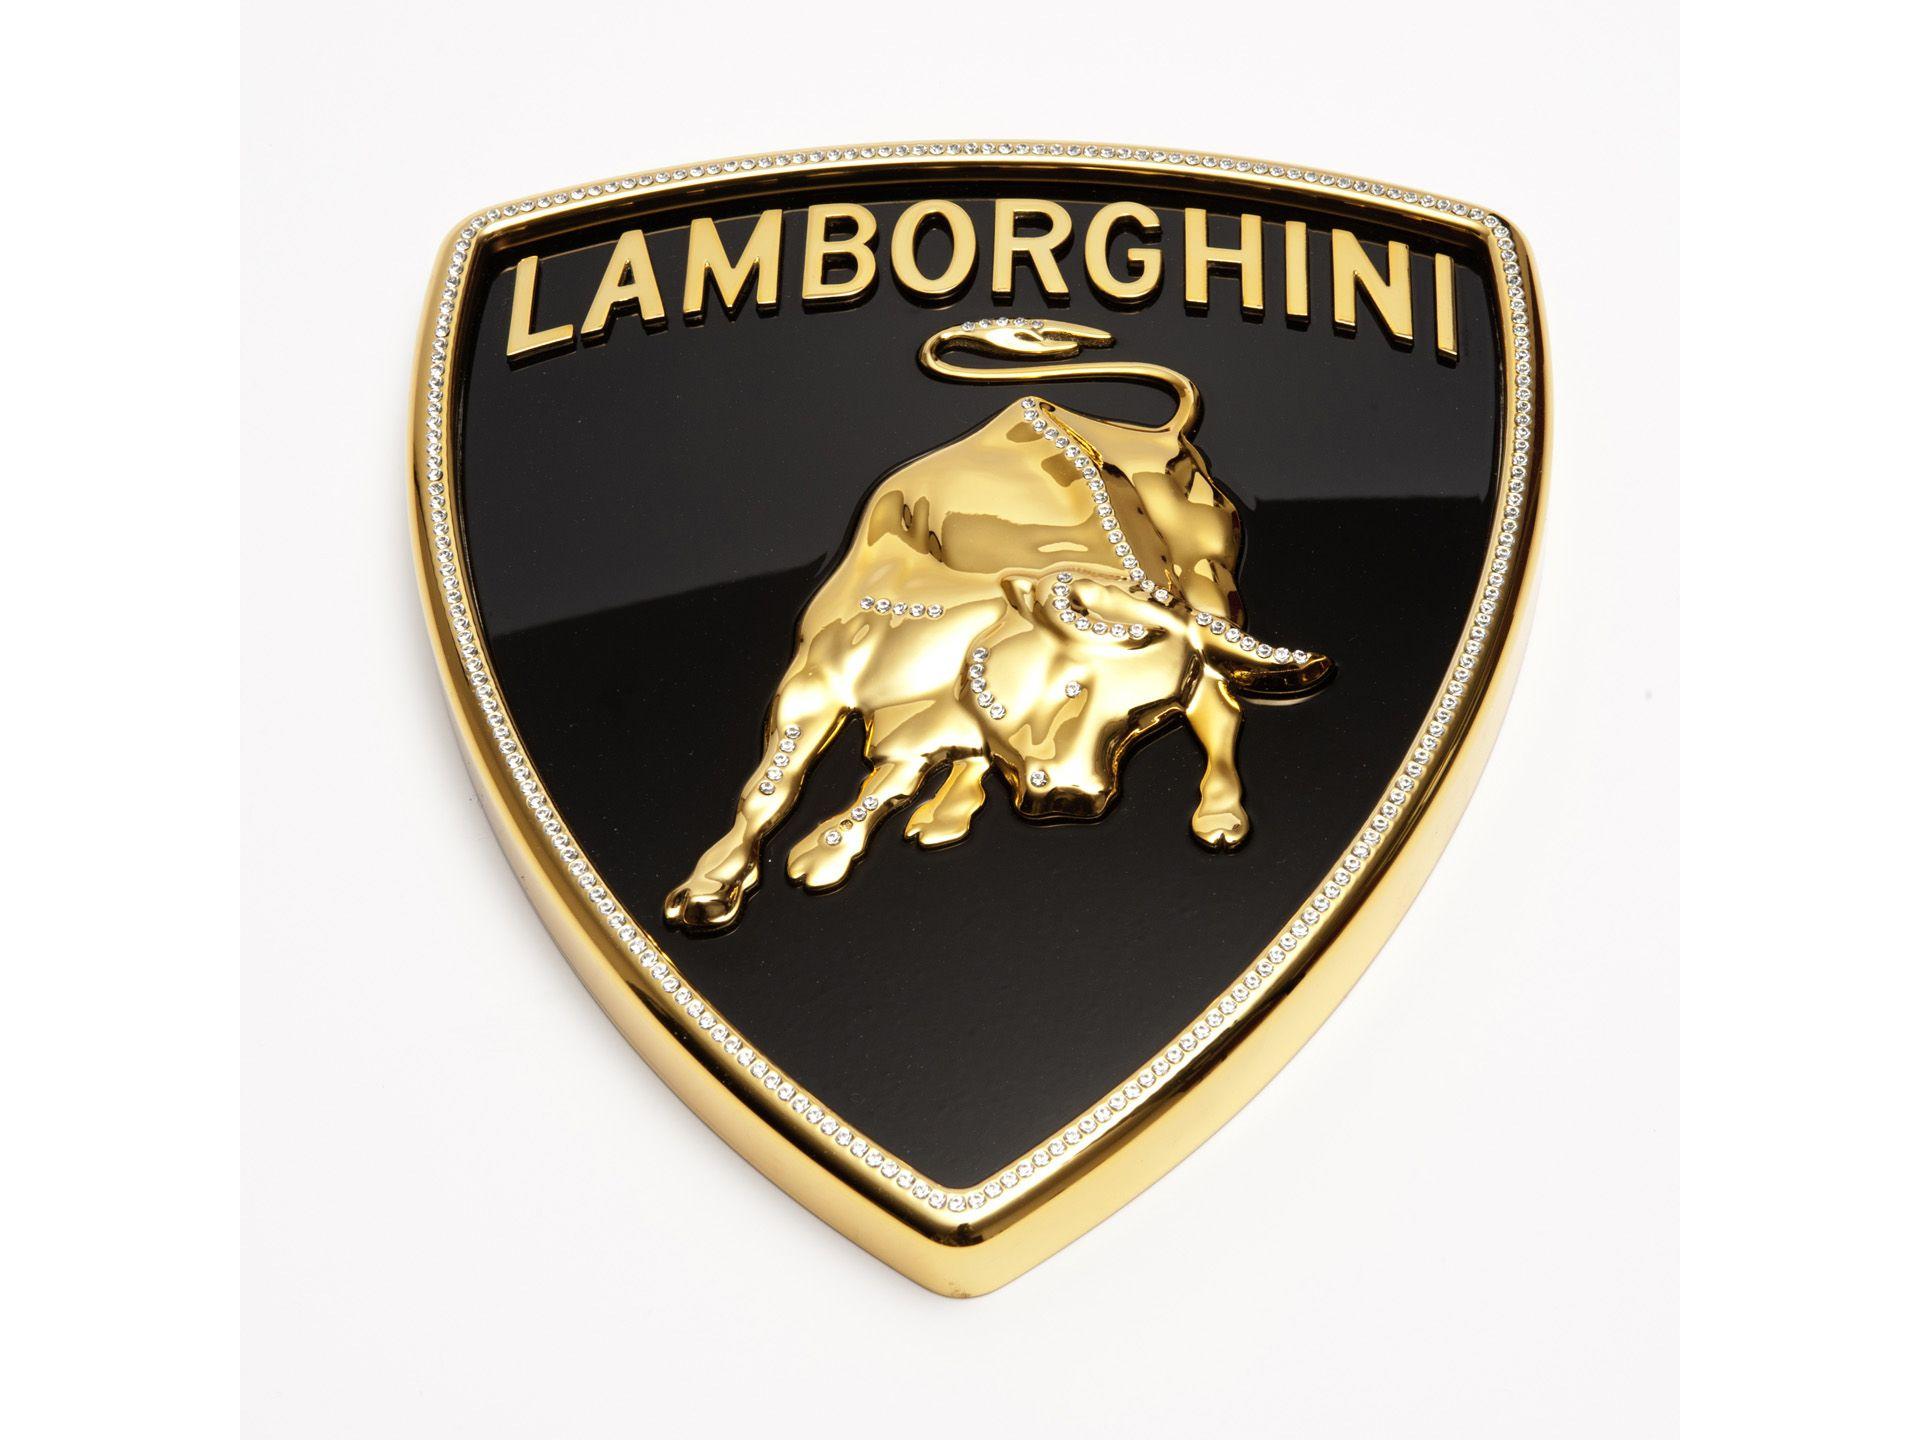 Aventador Logo - 2012 Lamborghini Aventador LP 700-4 Model by Robert Gulpen ...